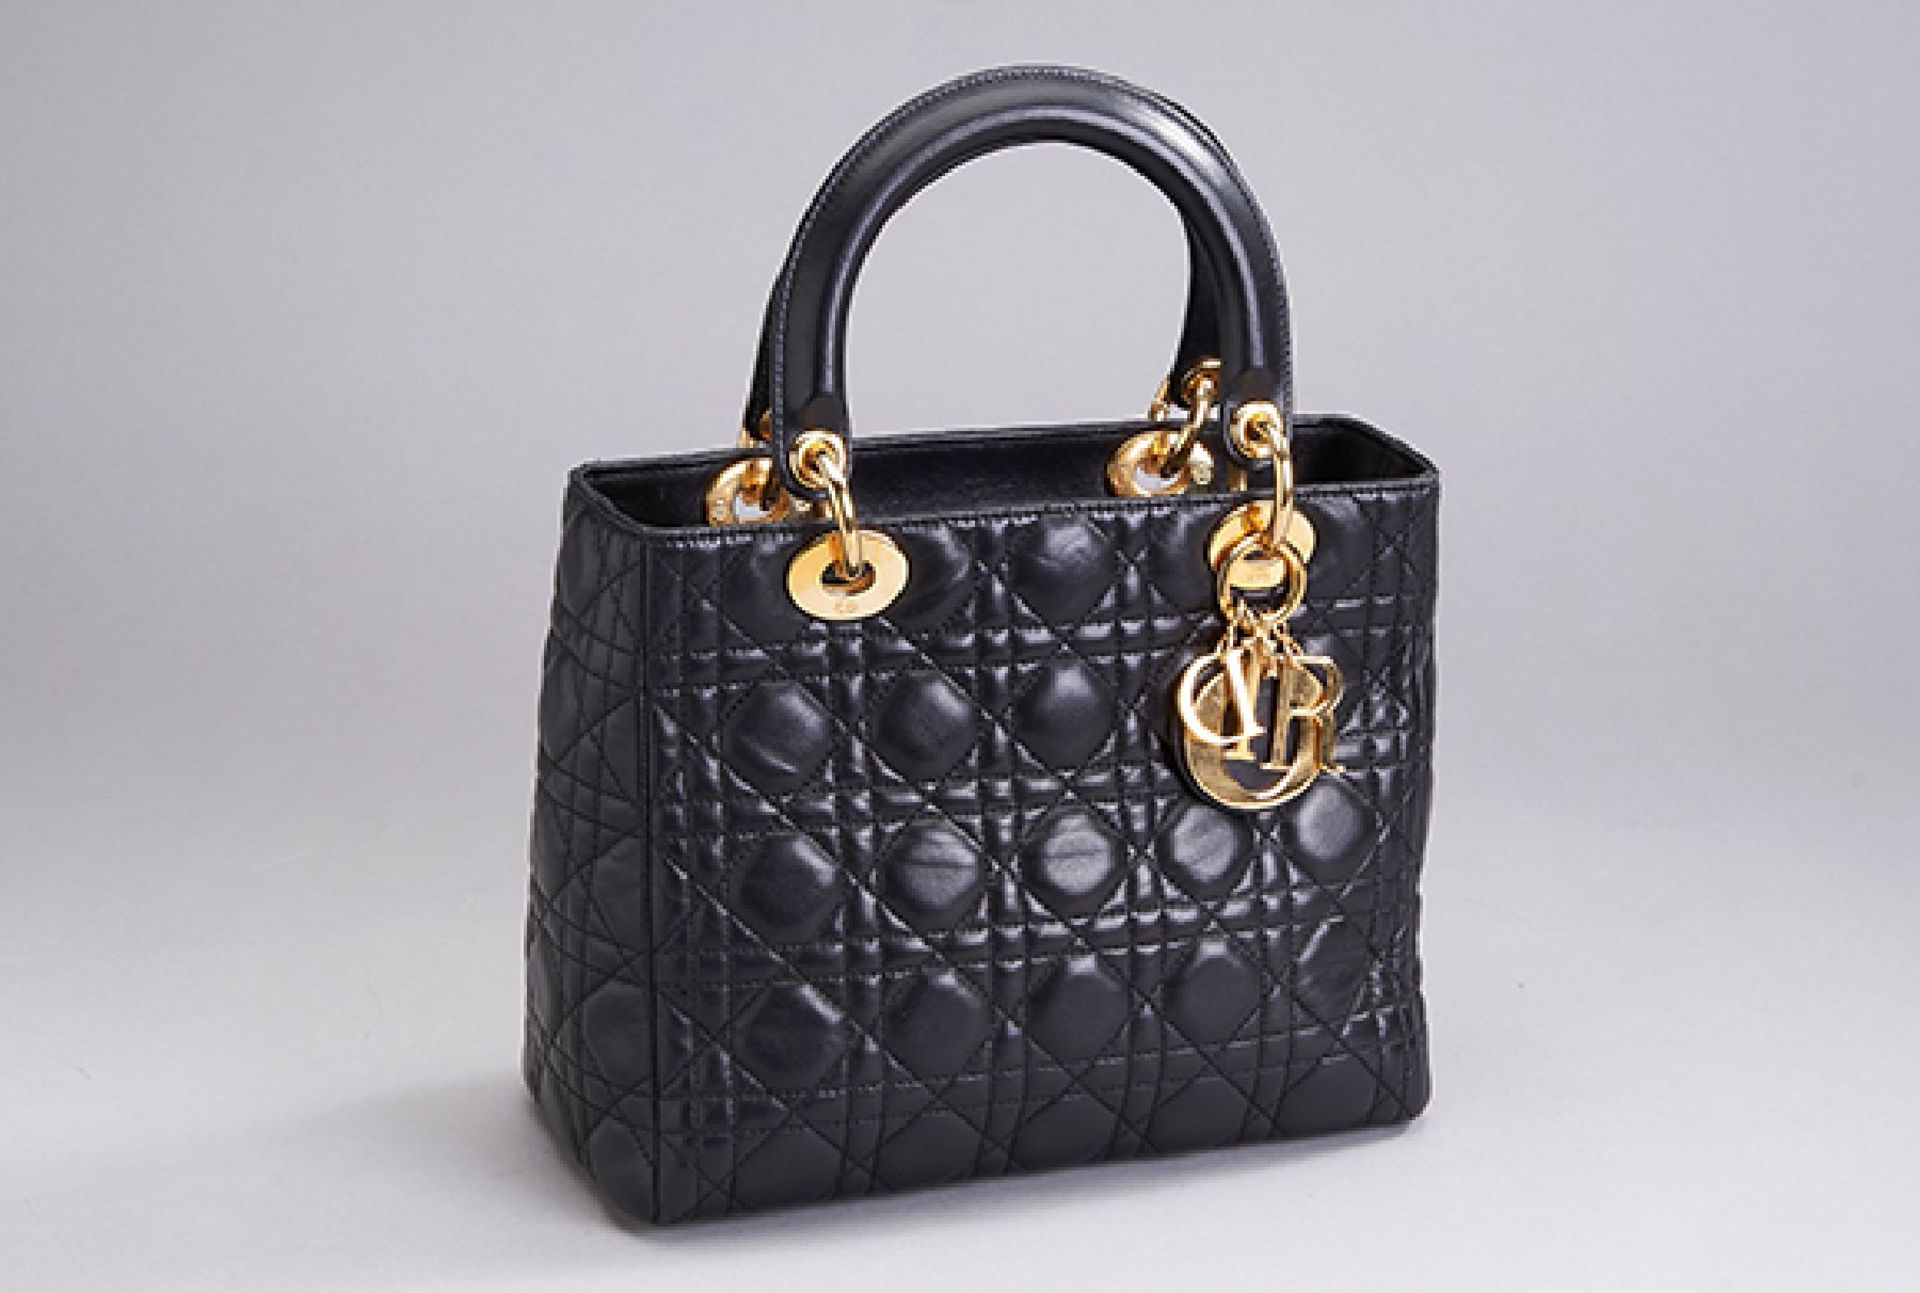 DIOR Damenhandtasche 'Lady Dior Medium', schwarzes